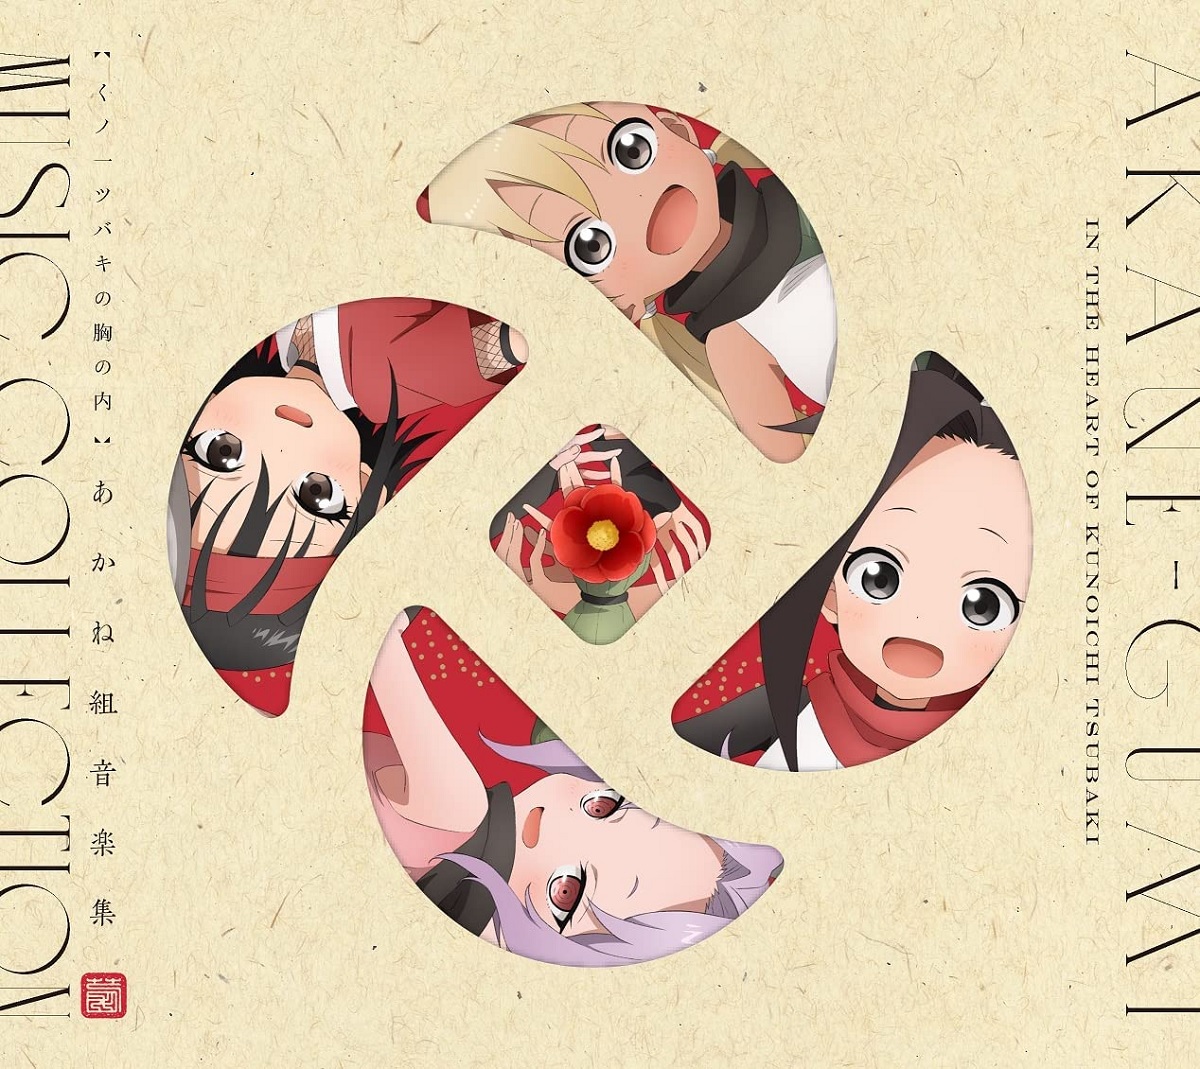 Cover art for『Hana (Yumi Uchiyama)・Konoha (M・A・O) - あかね組活動日誌 ～先生～』from the release『Kunoichi Tsubaki no Mune no Uchi Akanegumi Ongakushuu